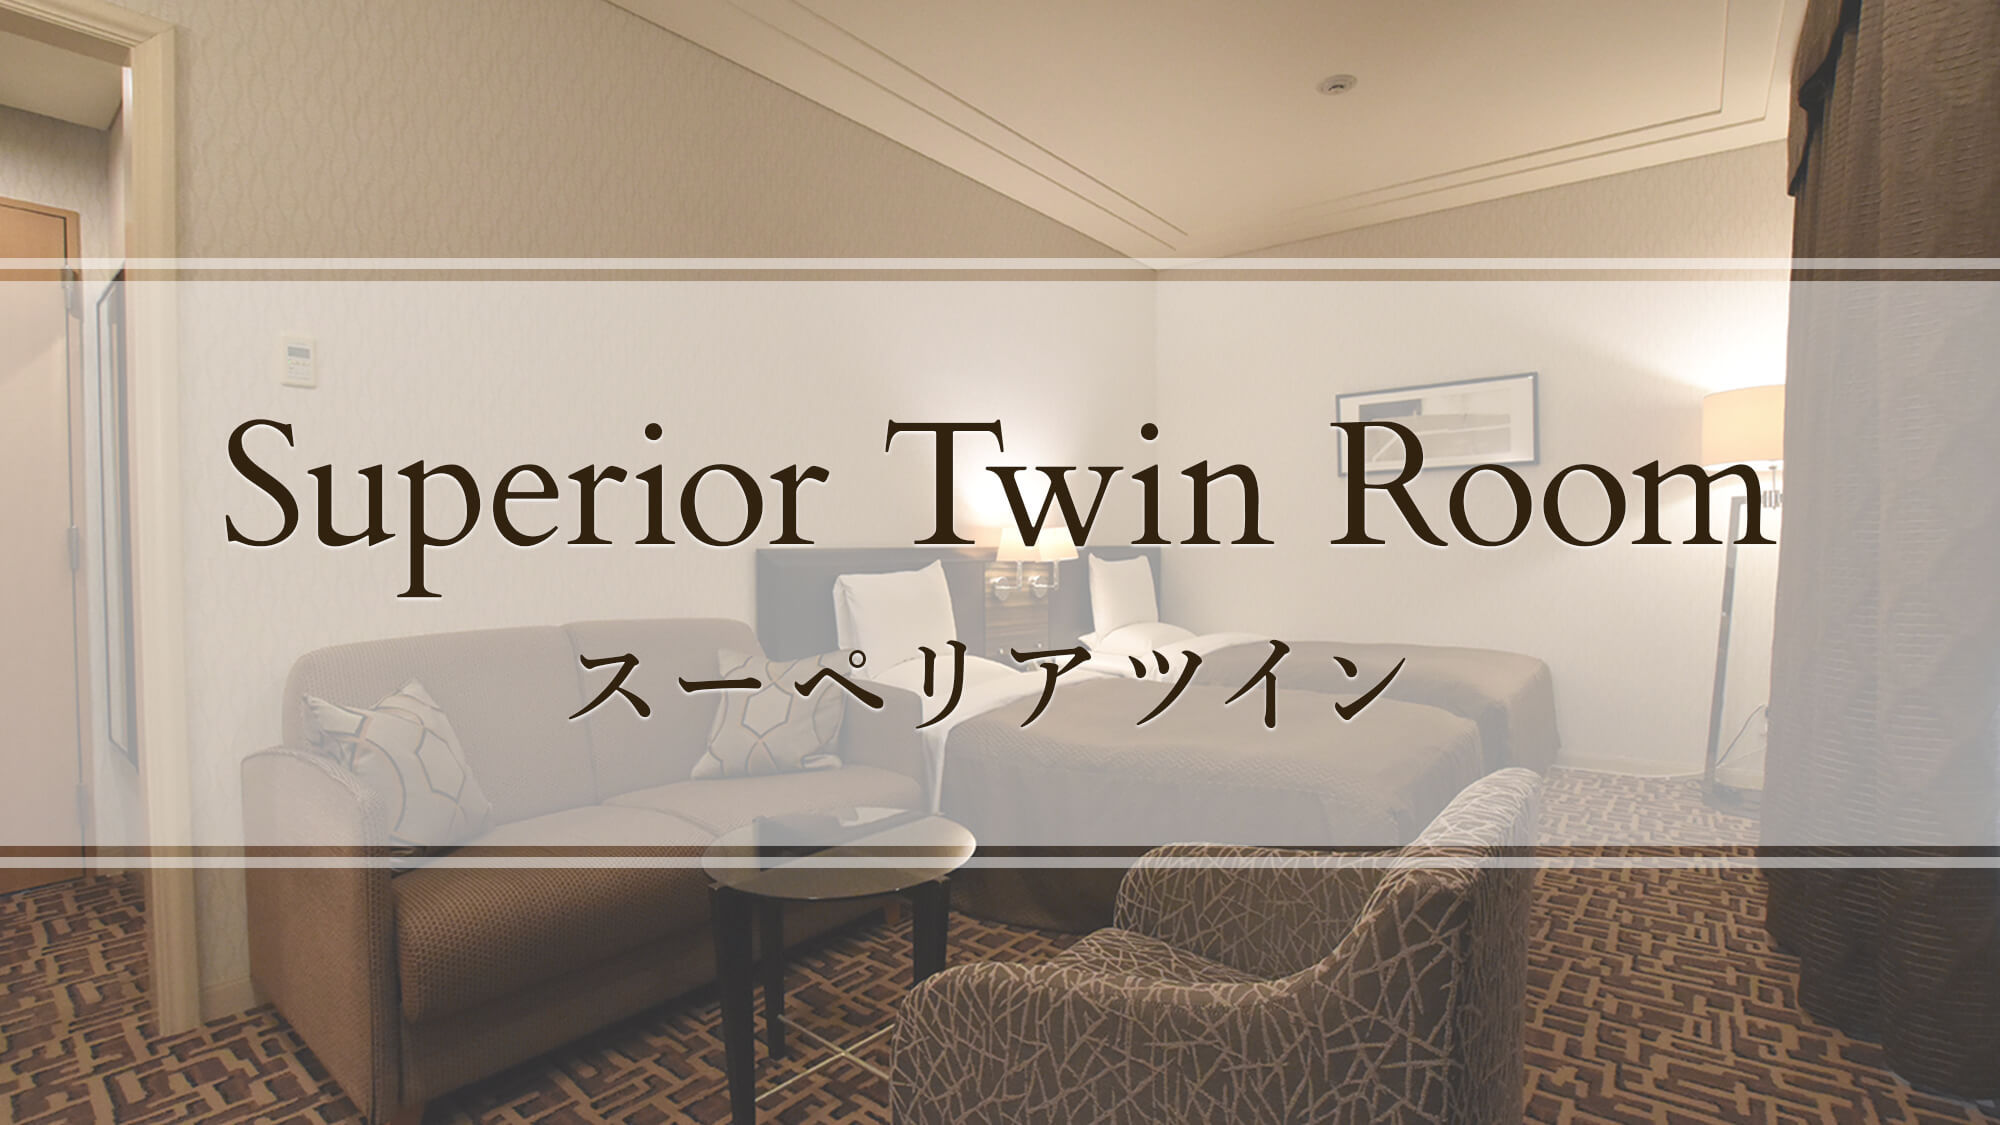 【スーペリアツイン】Superior Twin Room